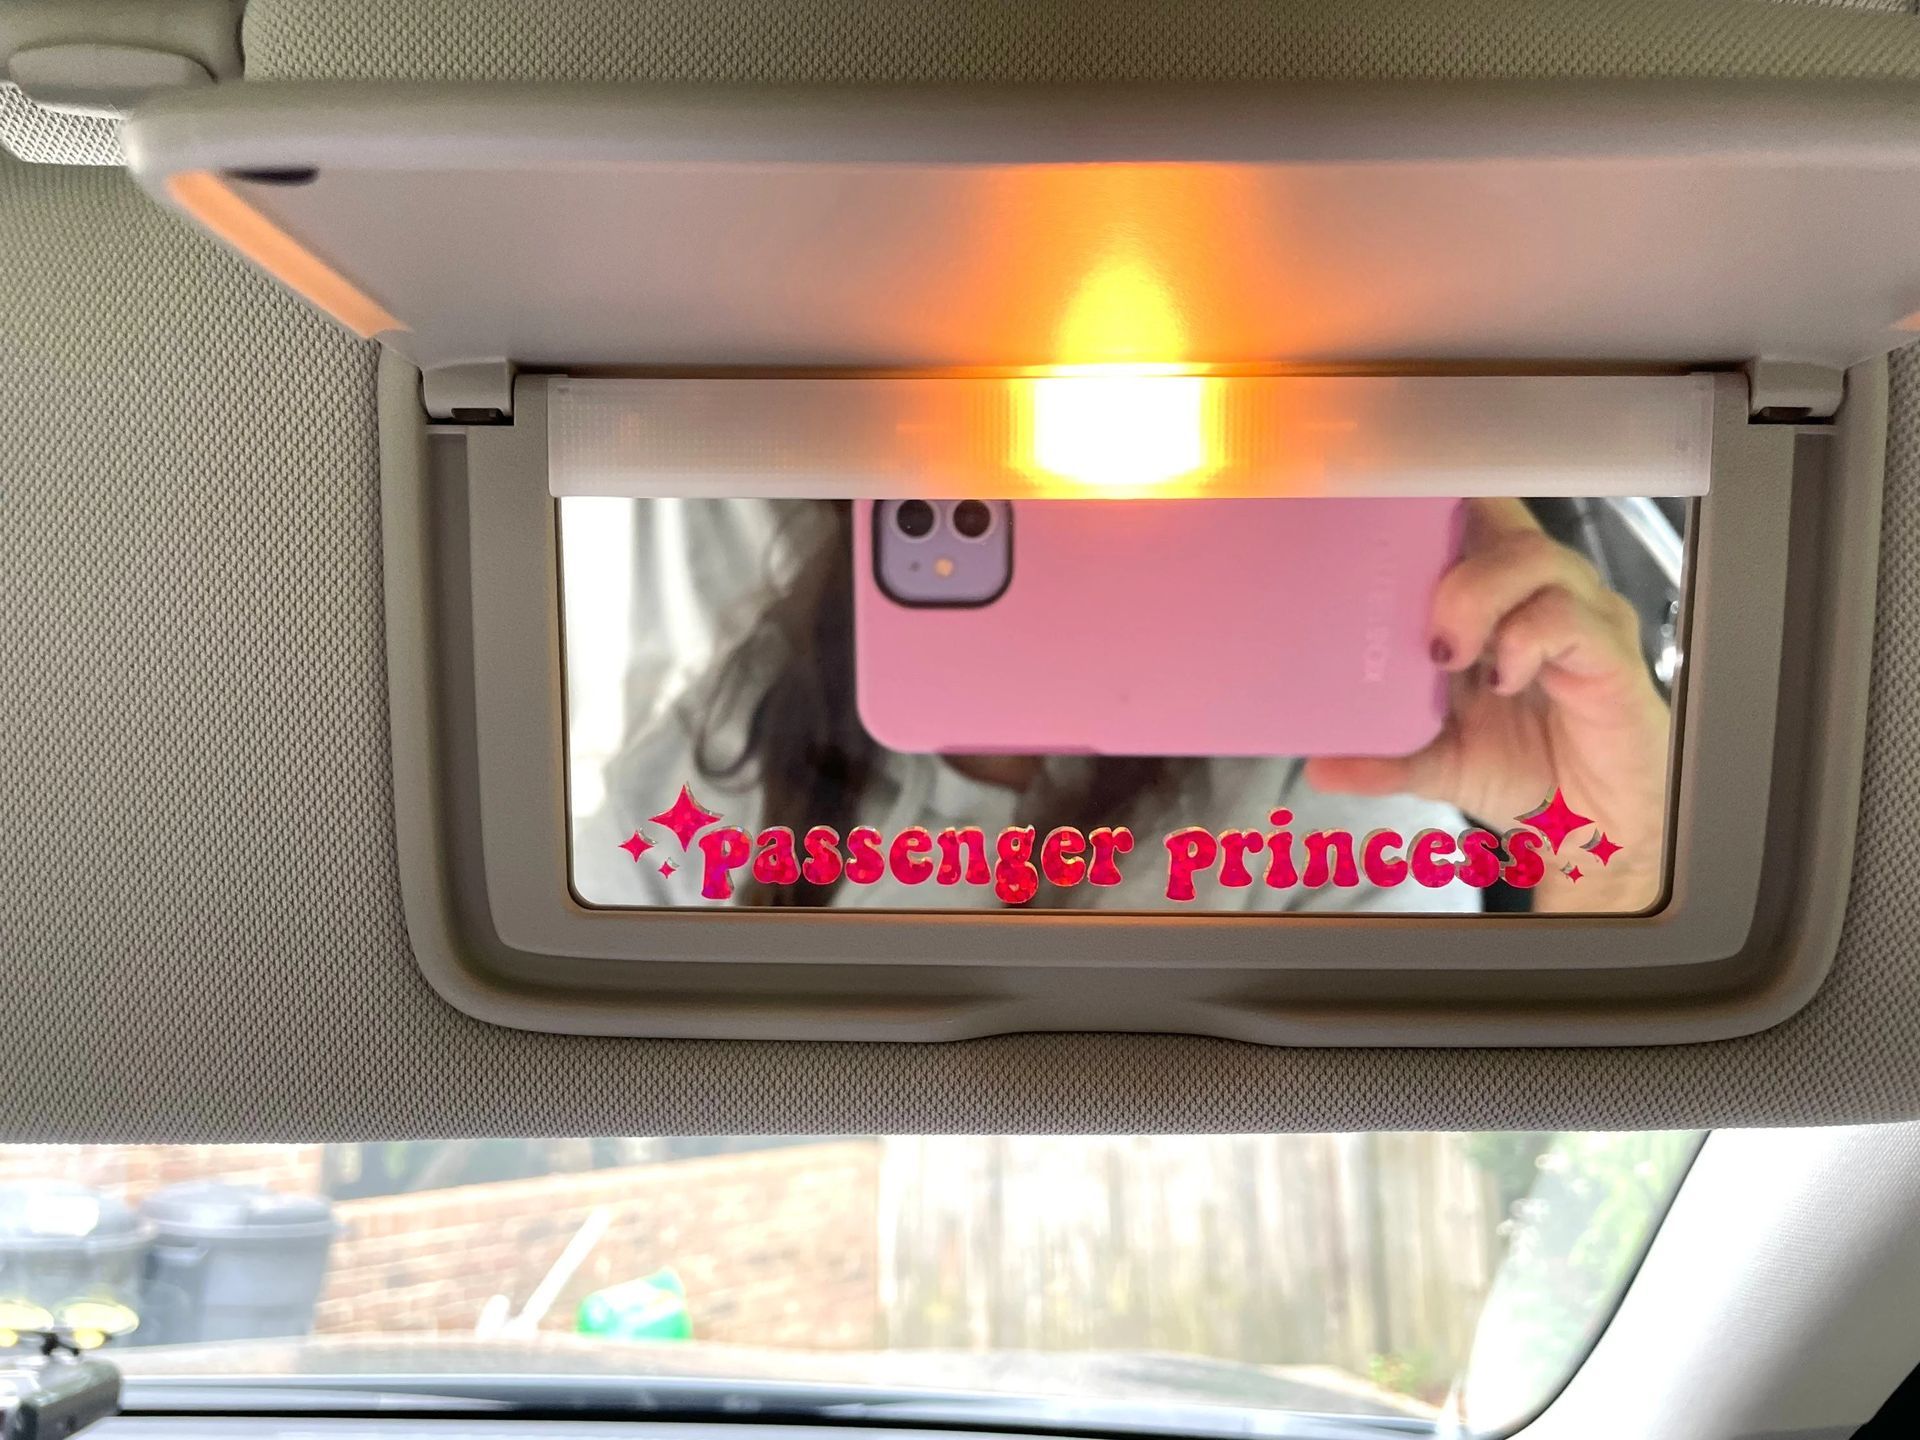 TikTok passenger princess meaning